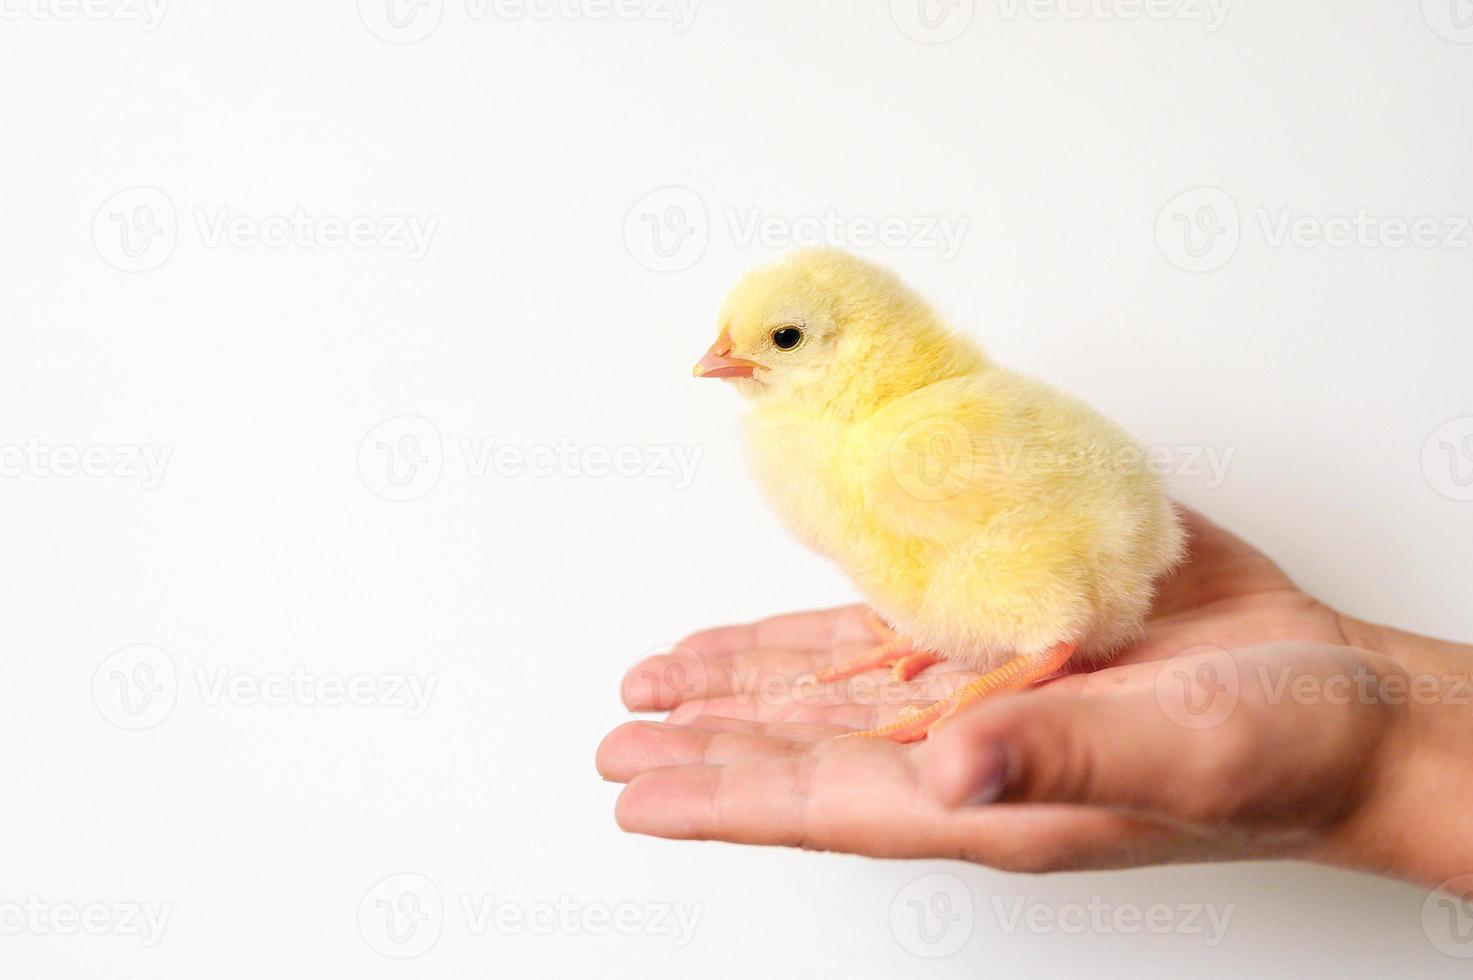 fofinho pintinho recém-nascido amarelo na mão de uma criança no fundo branco foto